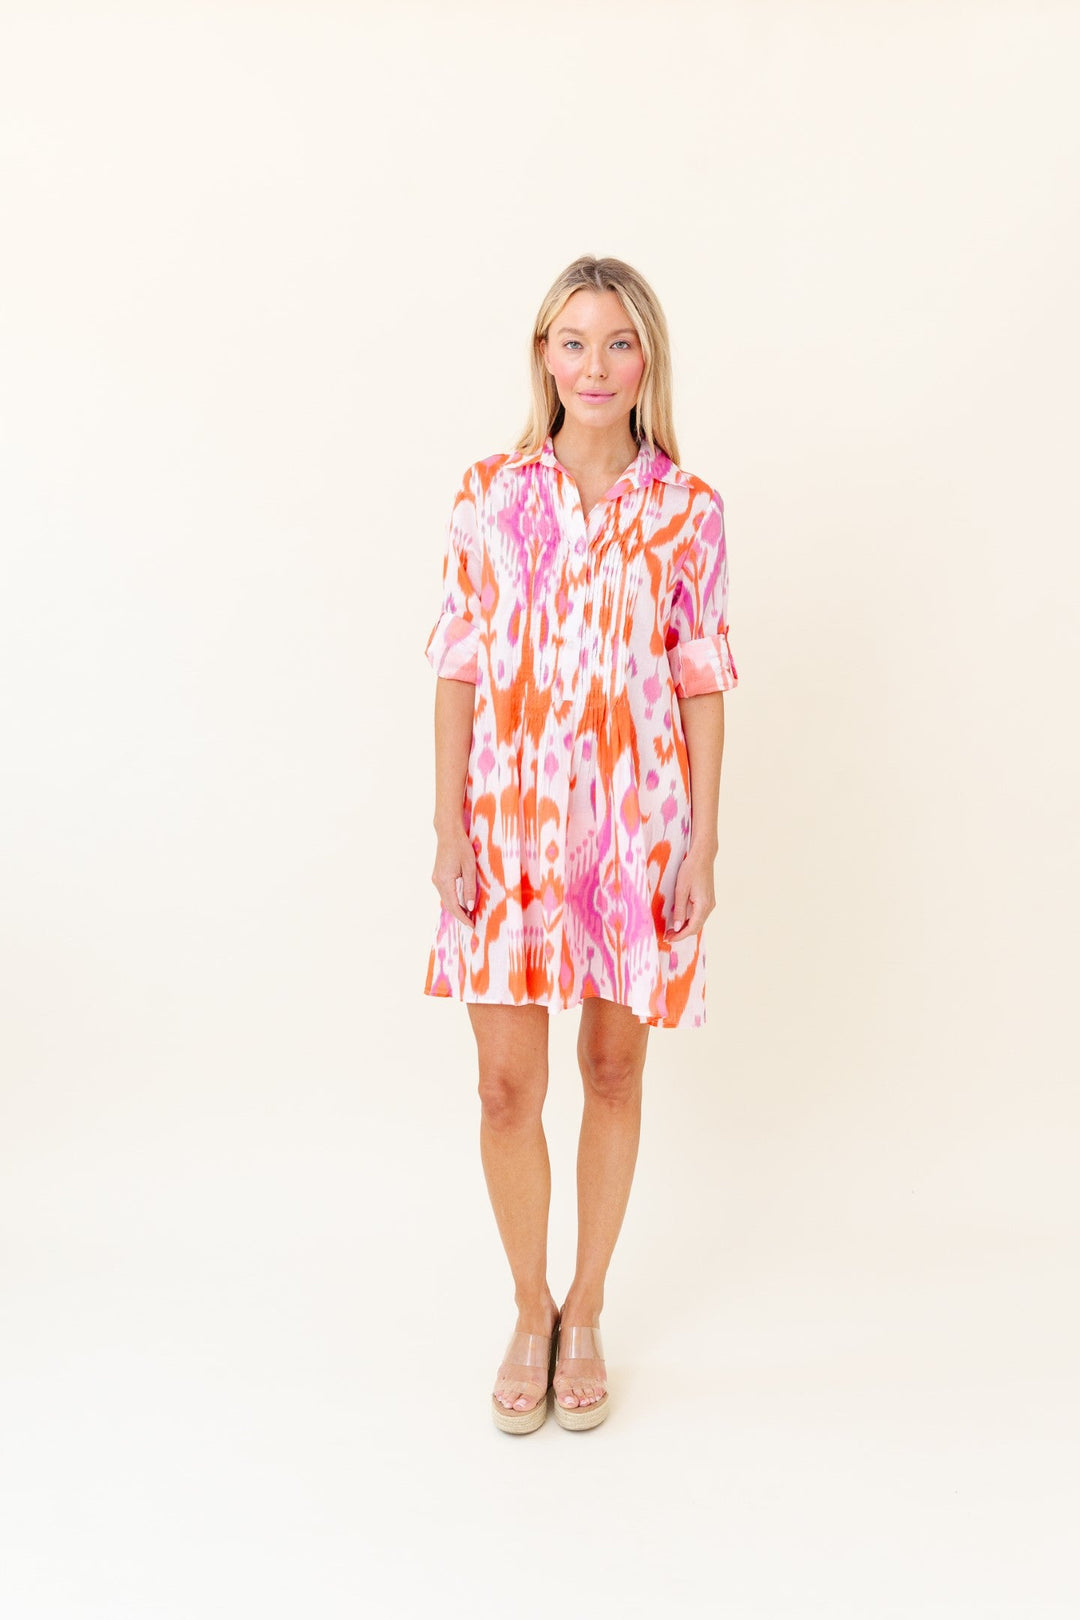 Sheridan French Mallory Dress | Blush Sunrise Ikat